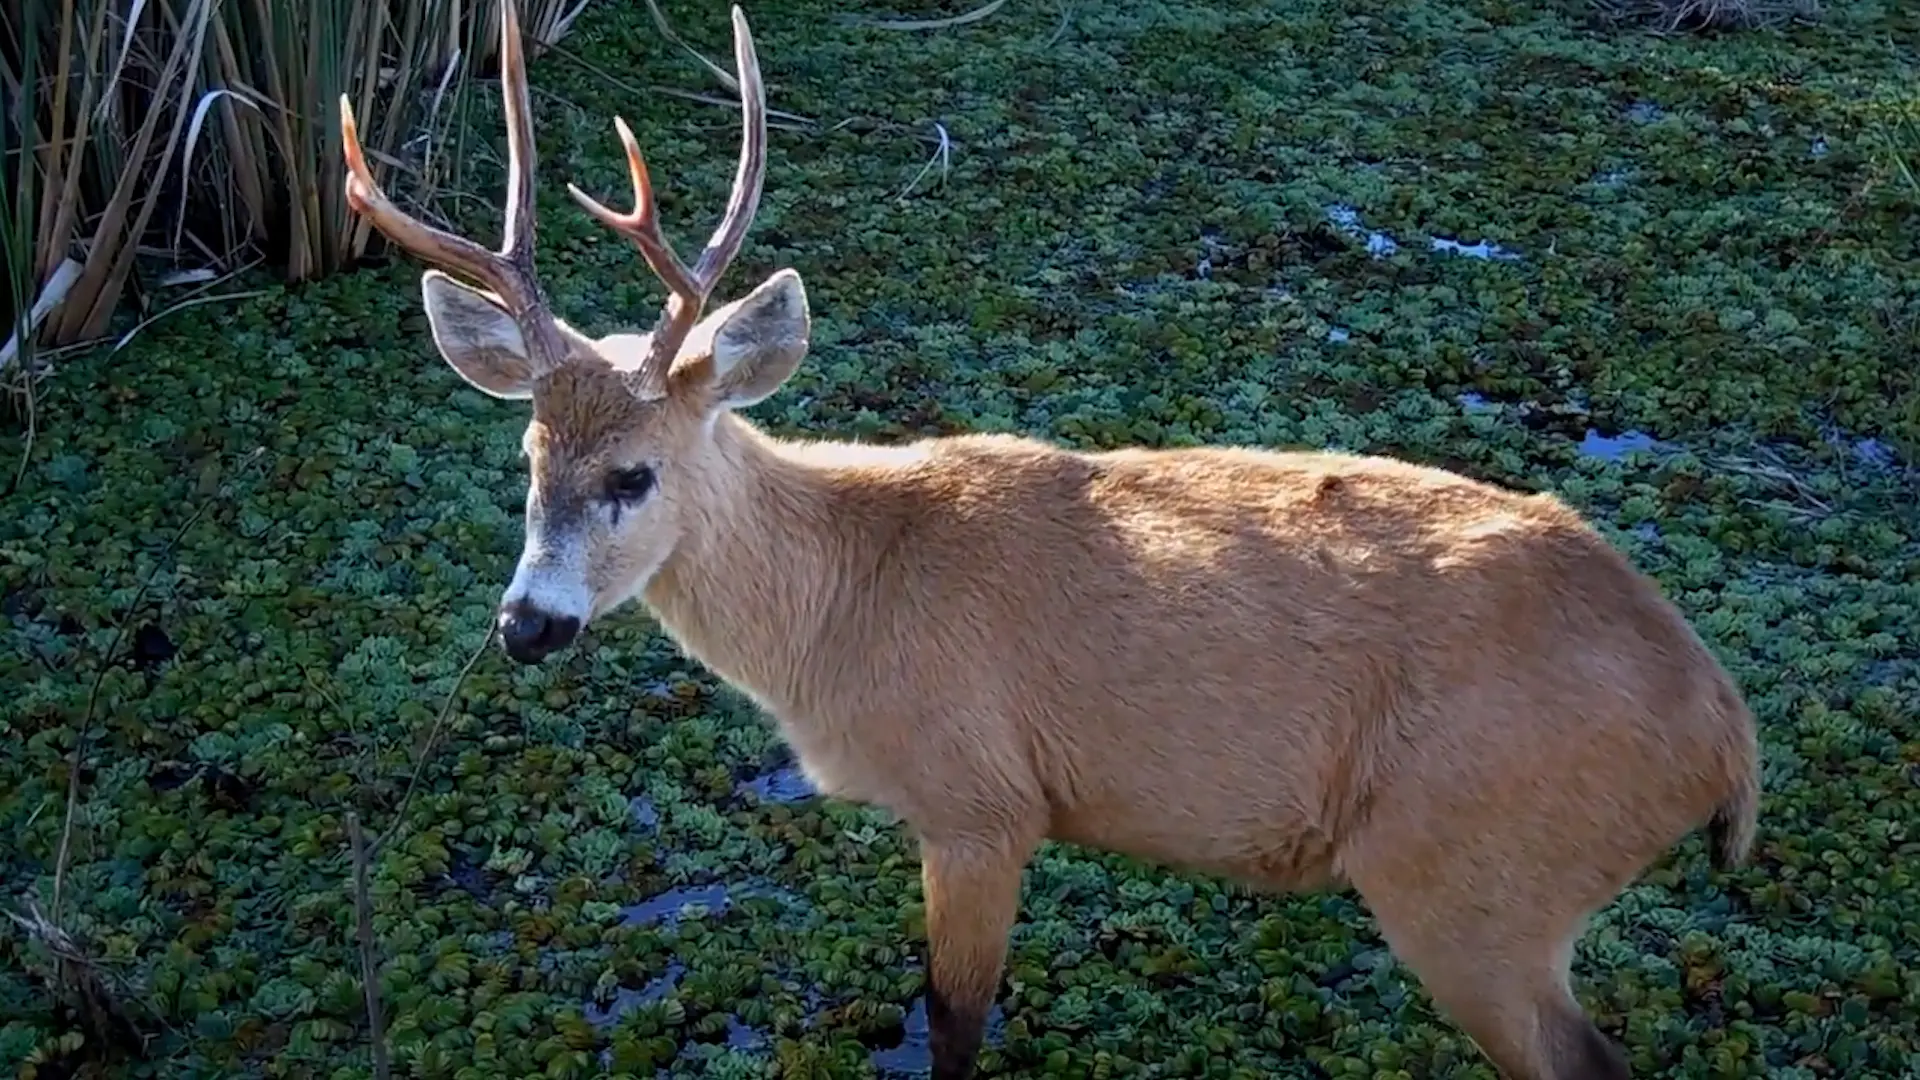 parque nacional ciervo de los pantanos flora y fauna - Qué clase de animal es el ciervo de los pantanos